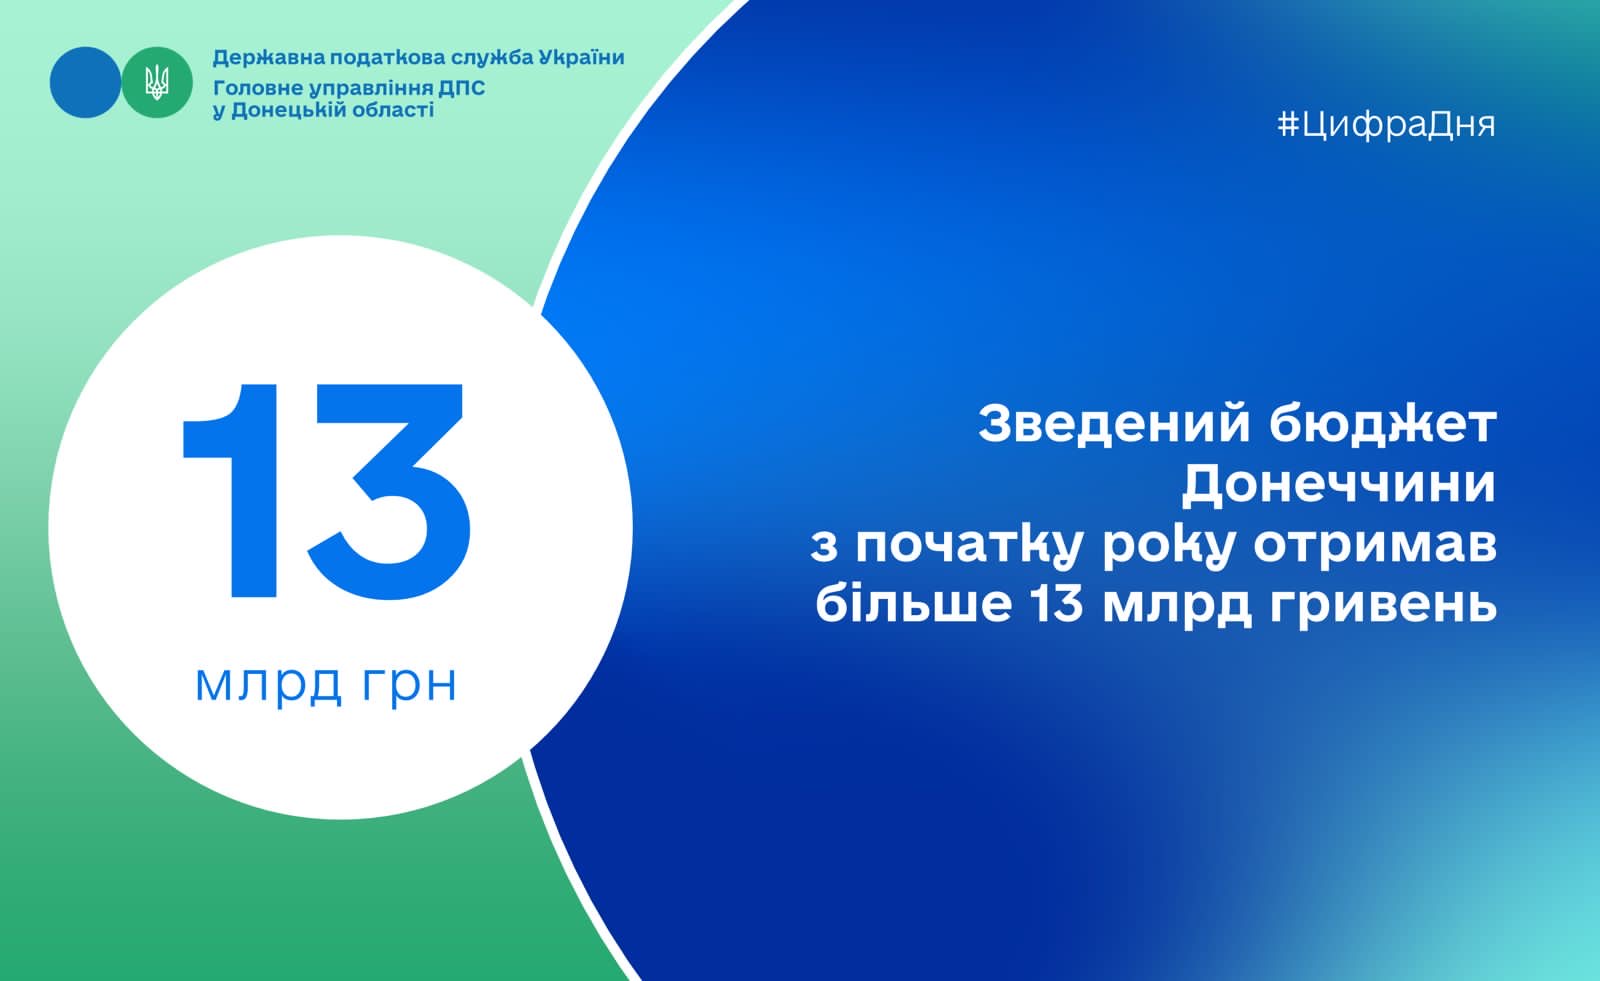 Зведений бюджет Донеччини з початку року отримав більше 13 мільярдів гривень